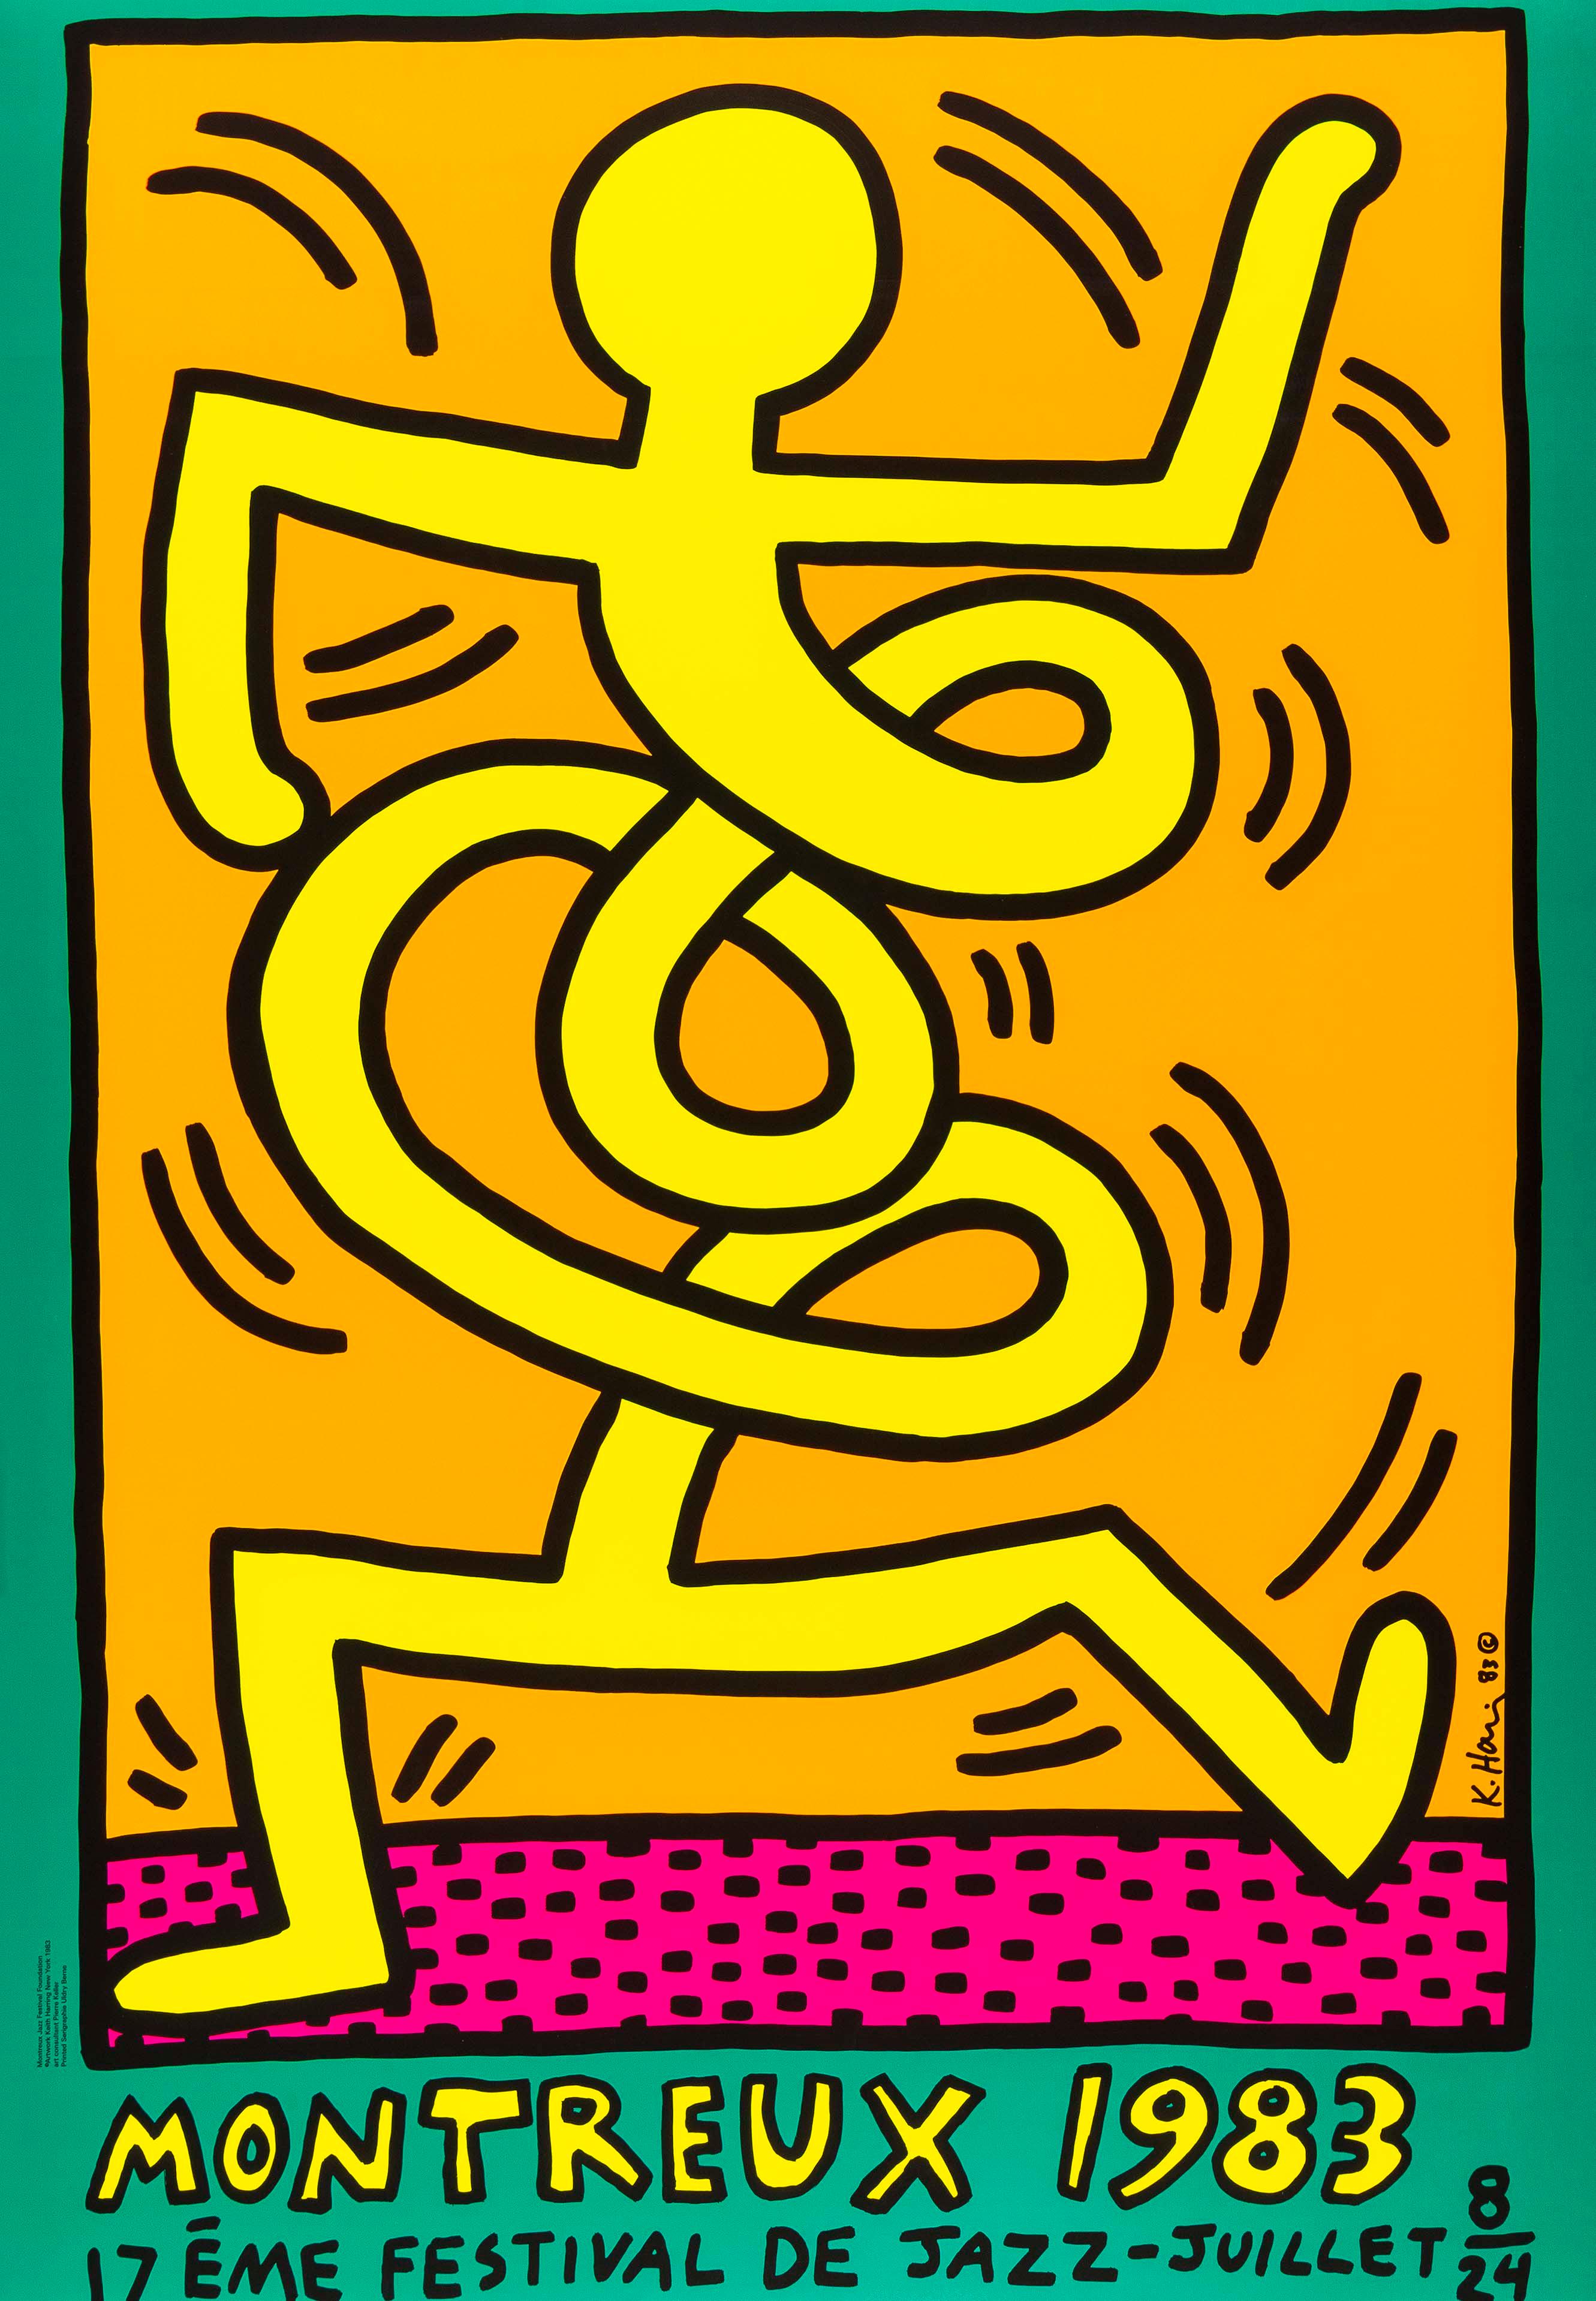 Montreux Jazz Festival, 1983
Keith Haring

Siebdruck in Farben, auf Vlies
Gedruckt bei Serigraphie Uldry Bern, Schweiz
Veröffentlicht für das Montreux Jazz Festival
Blatt:  100 × 70 cm (39.4 × 27.5 in)
Literatur: Döring & Osten 9